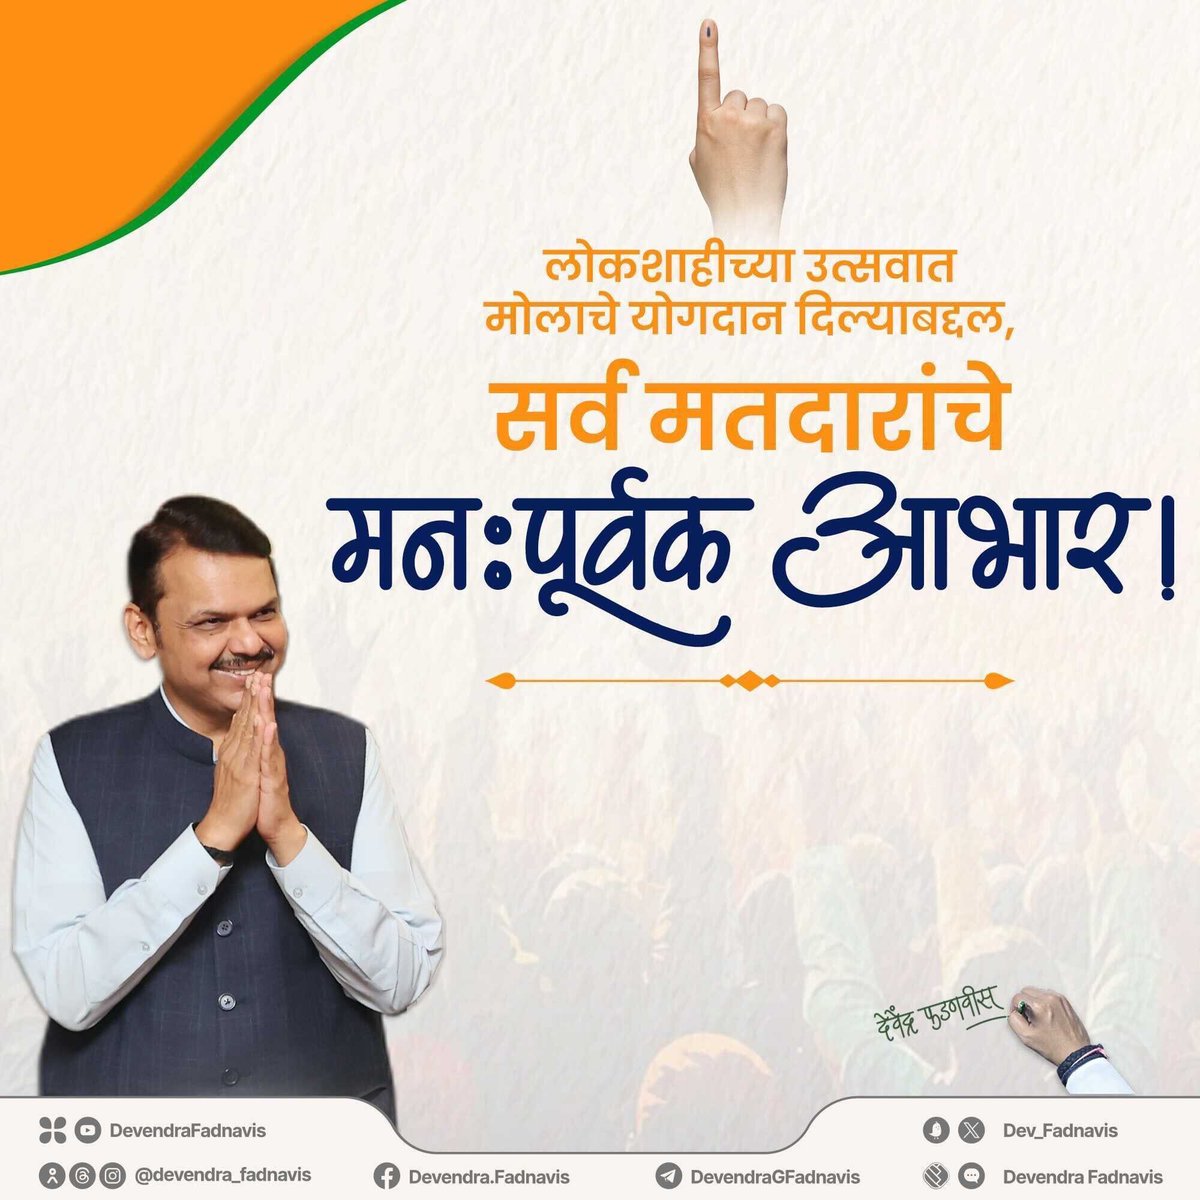 पुन्हा एकदा सर्व मतदारांचे मनापासून आभार! #Maharashtra #ModiJarooriHai #PhirEkBaarModiSarkar